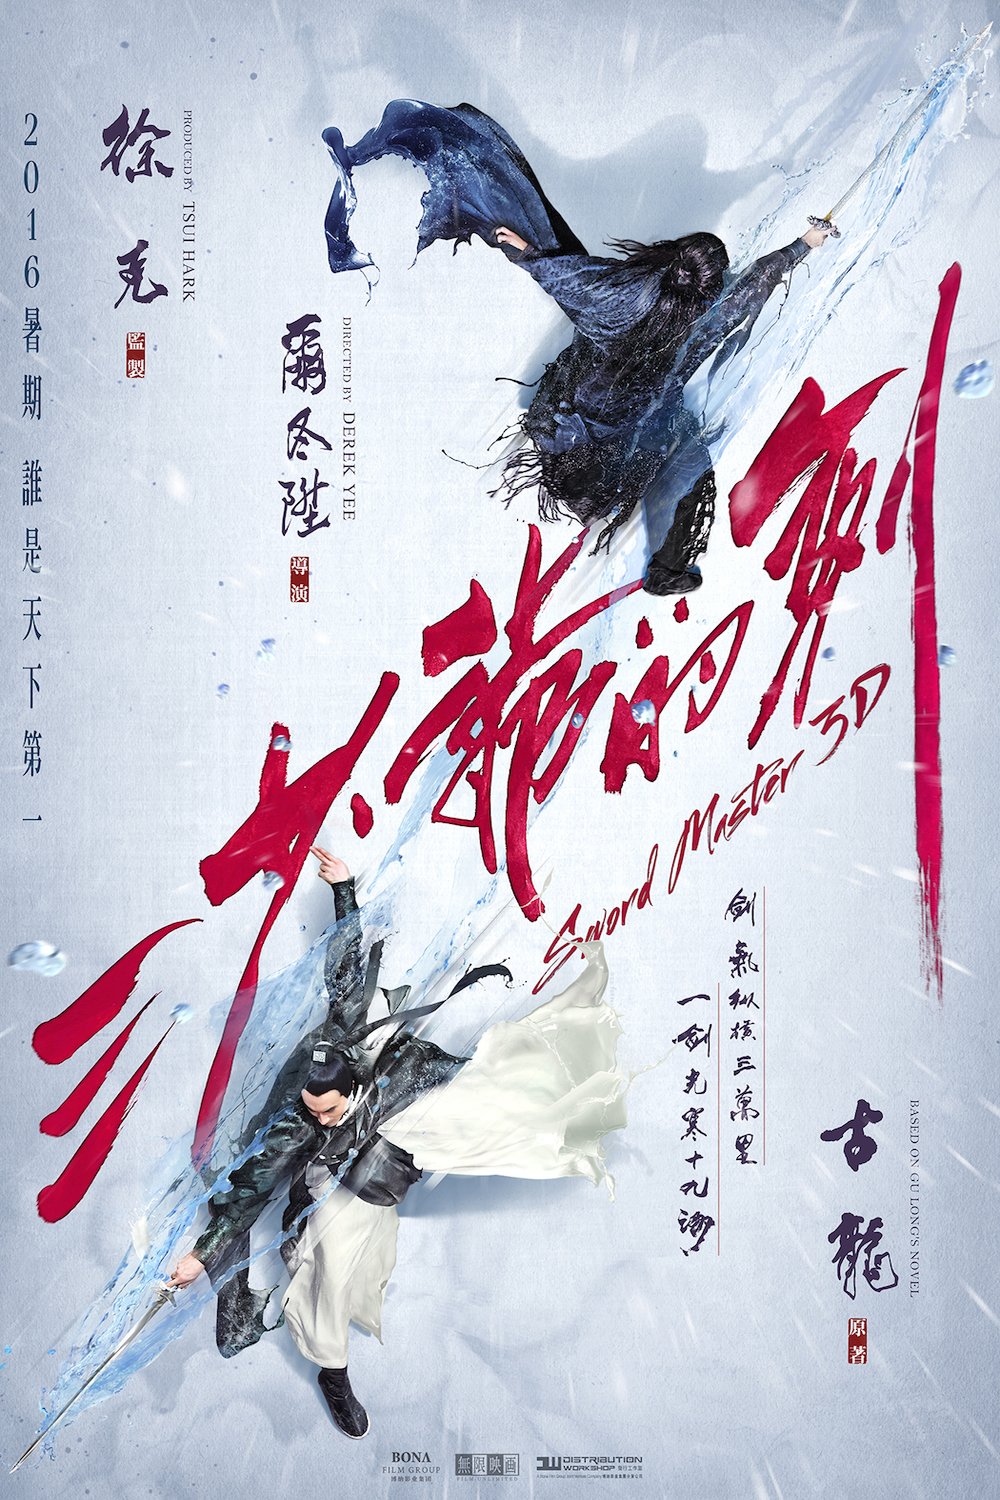 Mandarin poster of the movie San shao ye de jian